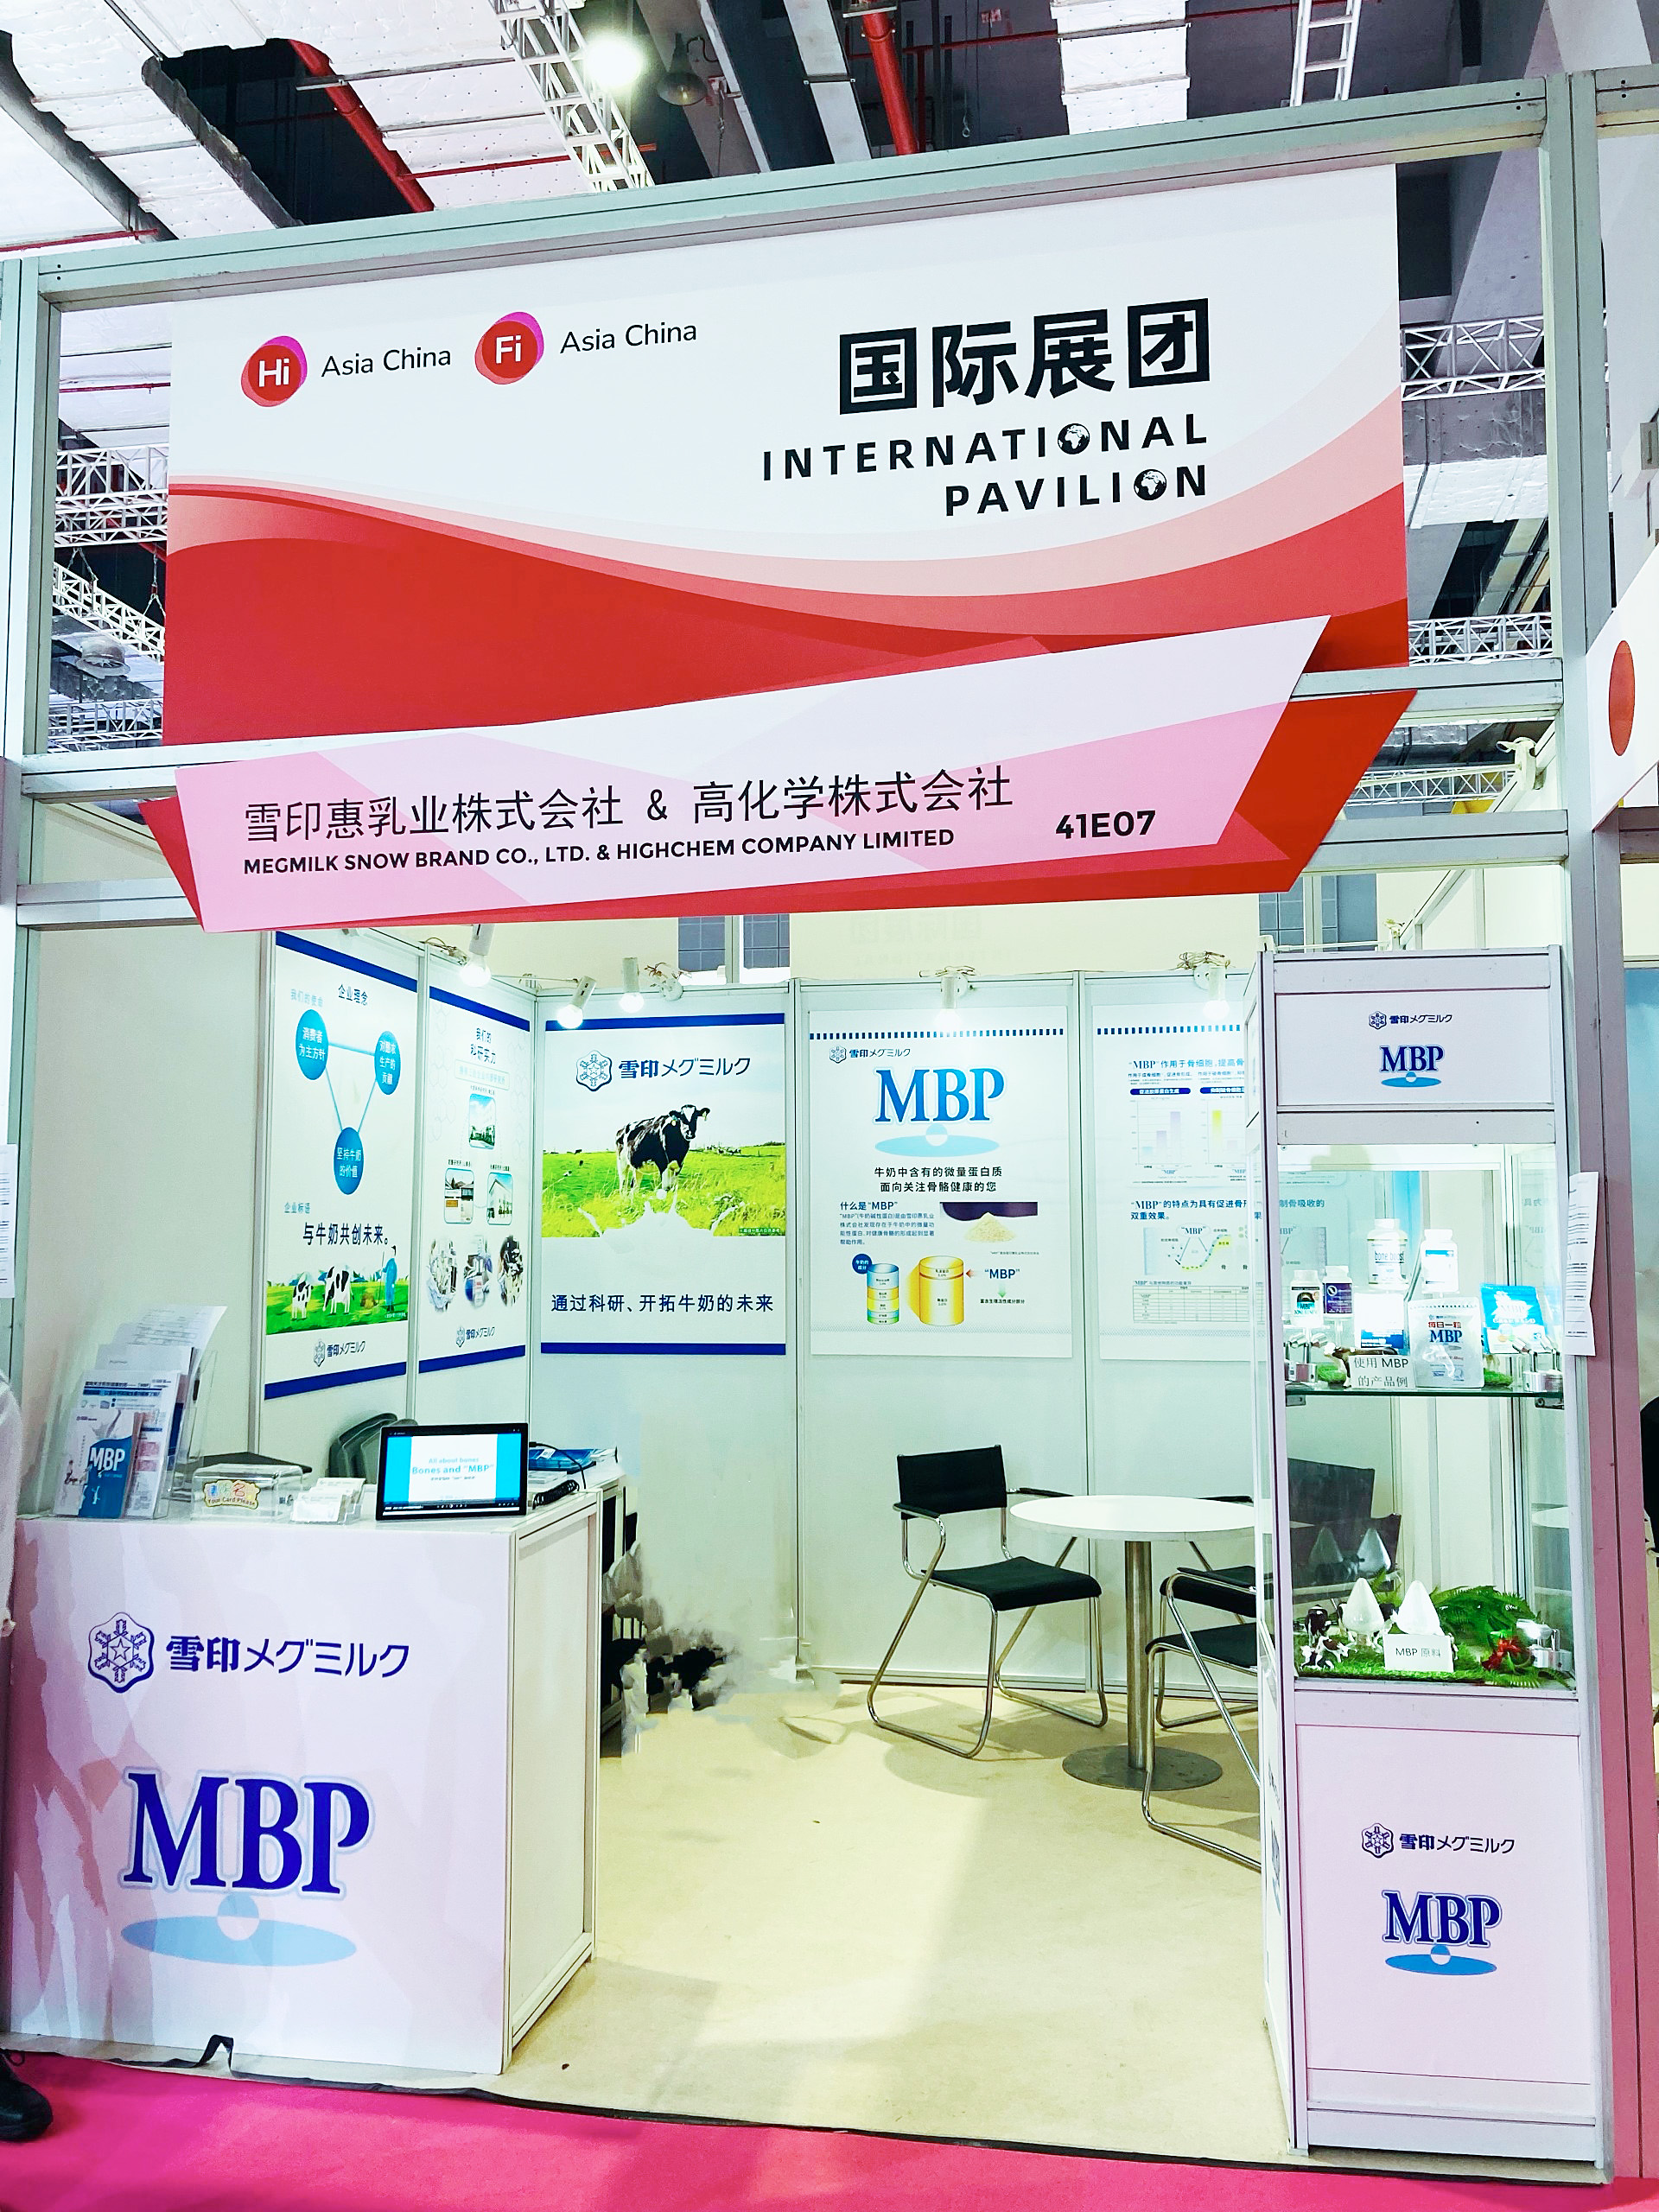 雪印メグミルクが中国・上海の食品展示会に出展したMBPのブース